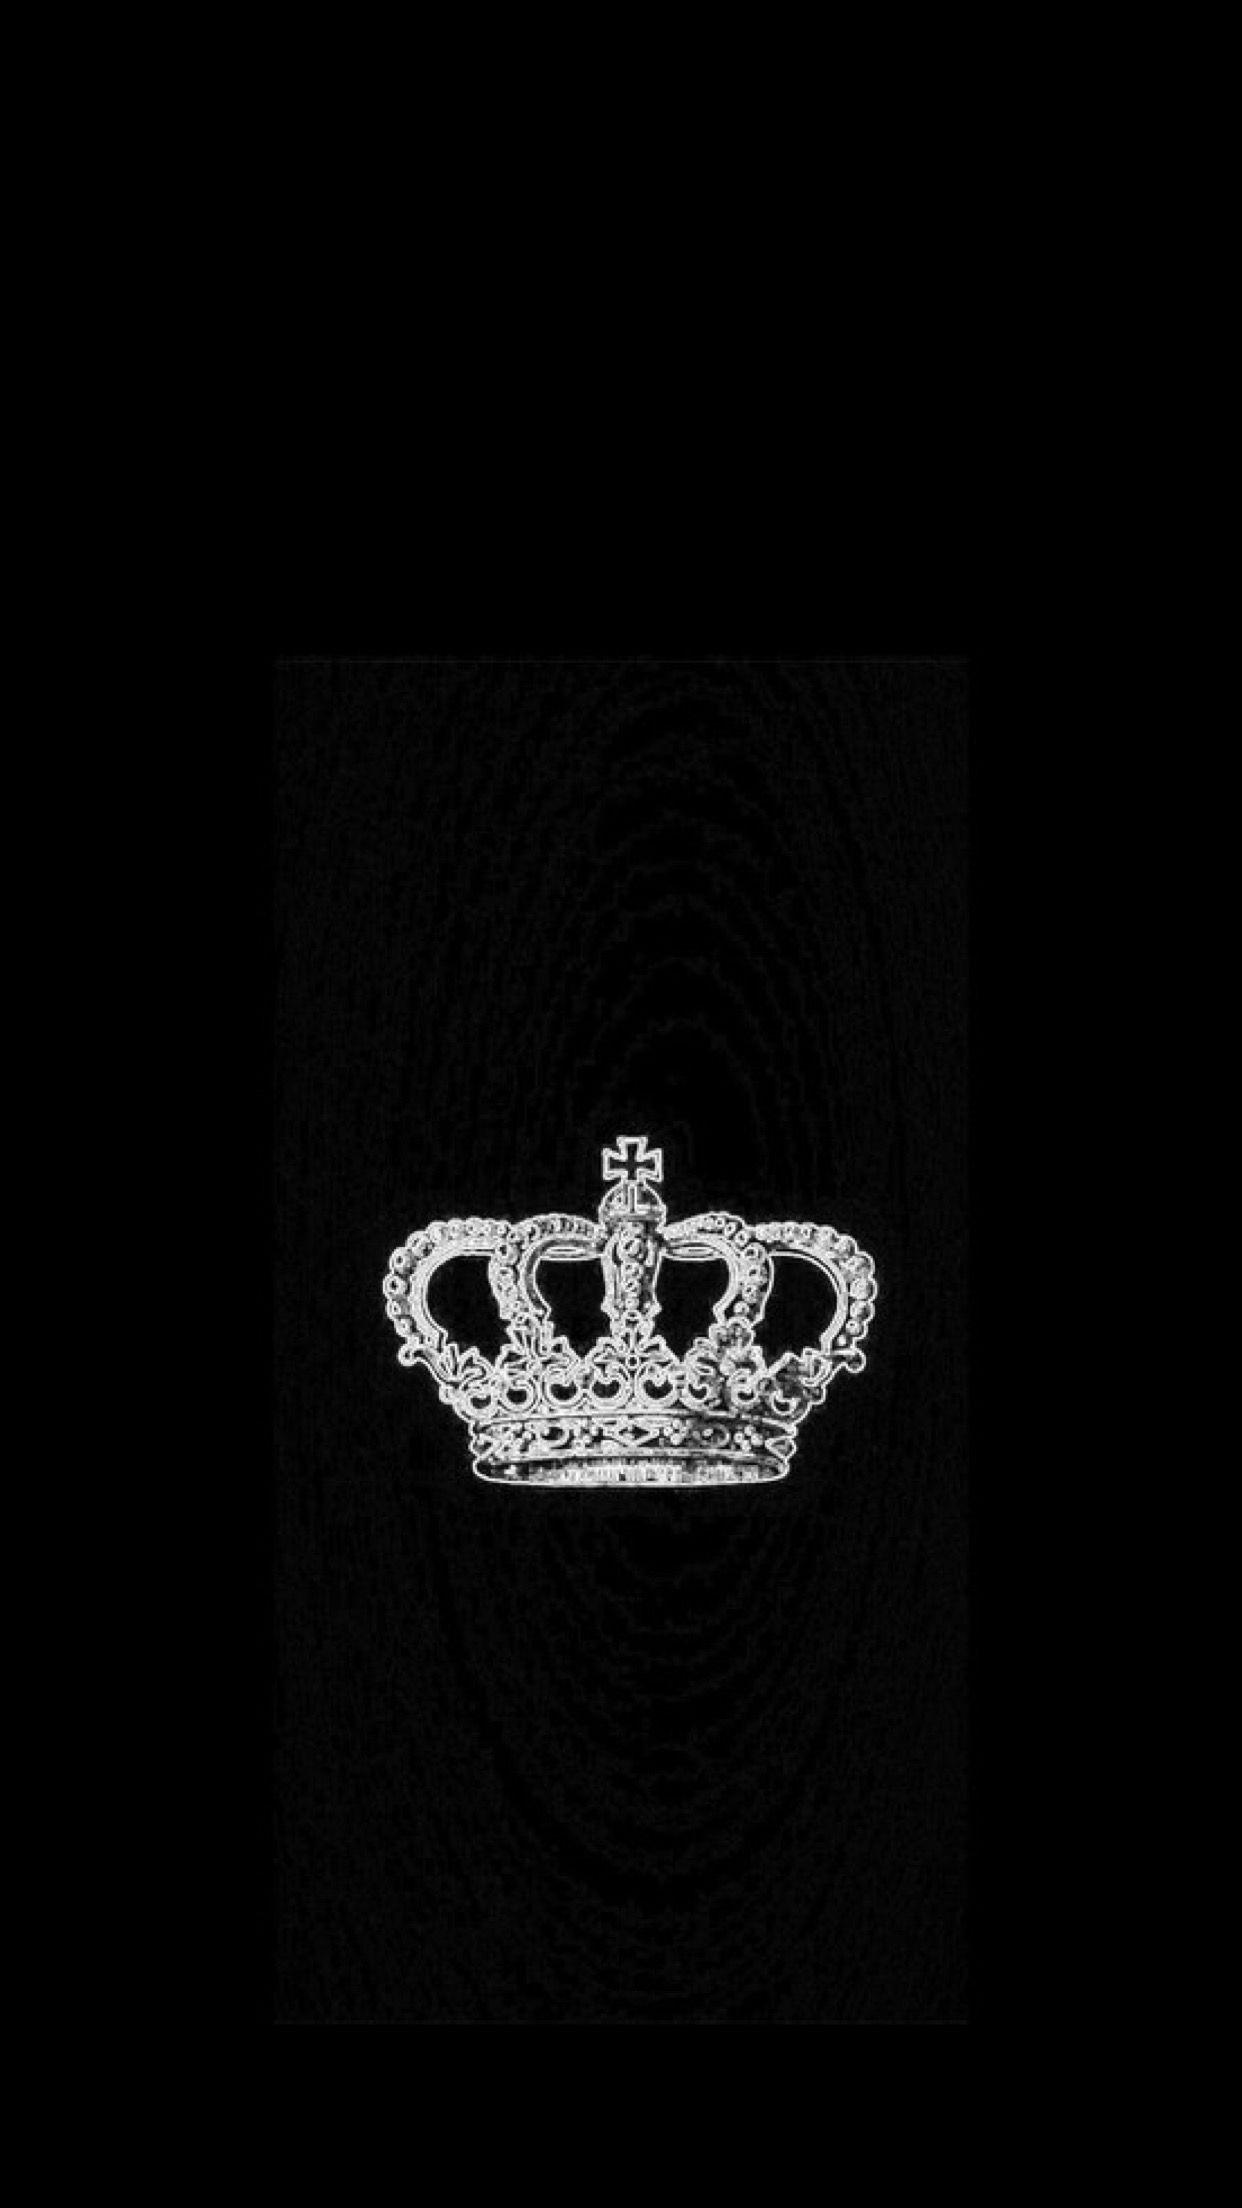 Royal crown logo design Black King Crown HD wallpaper  Pxfuel